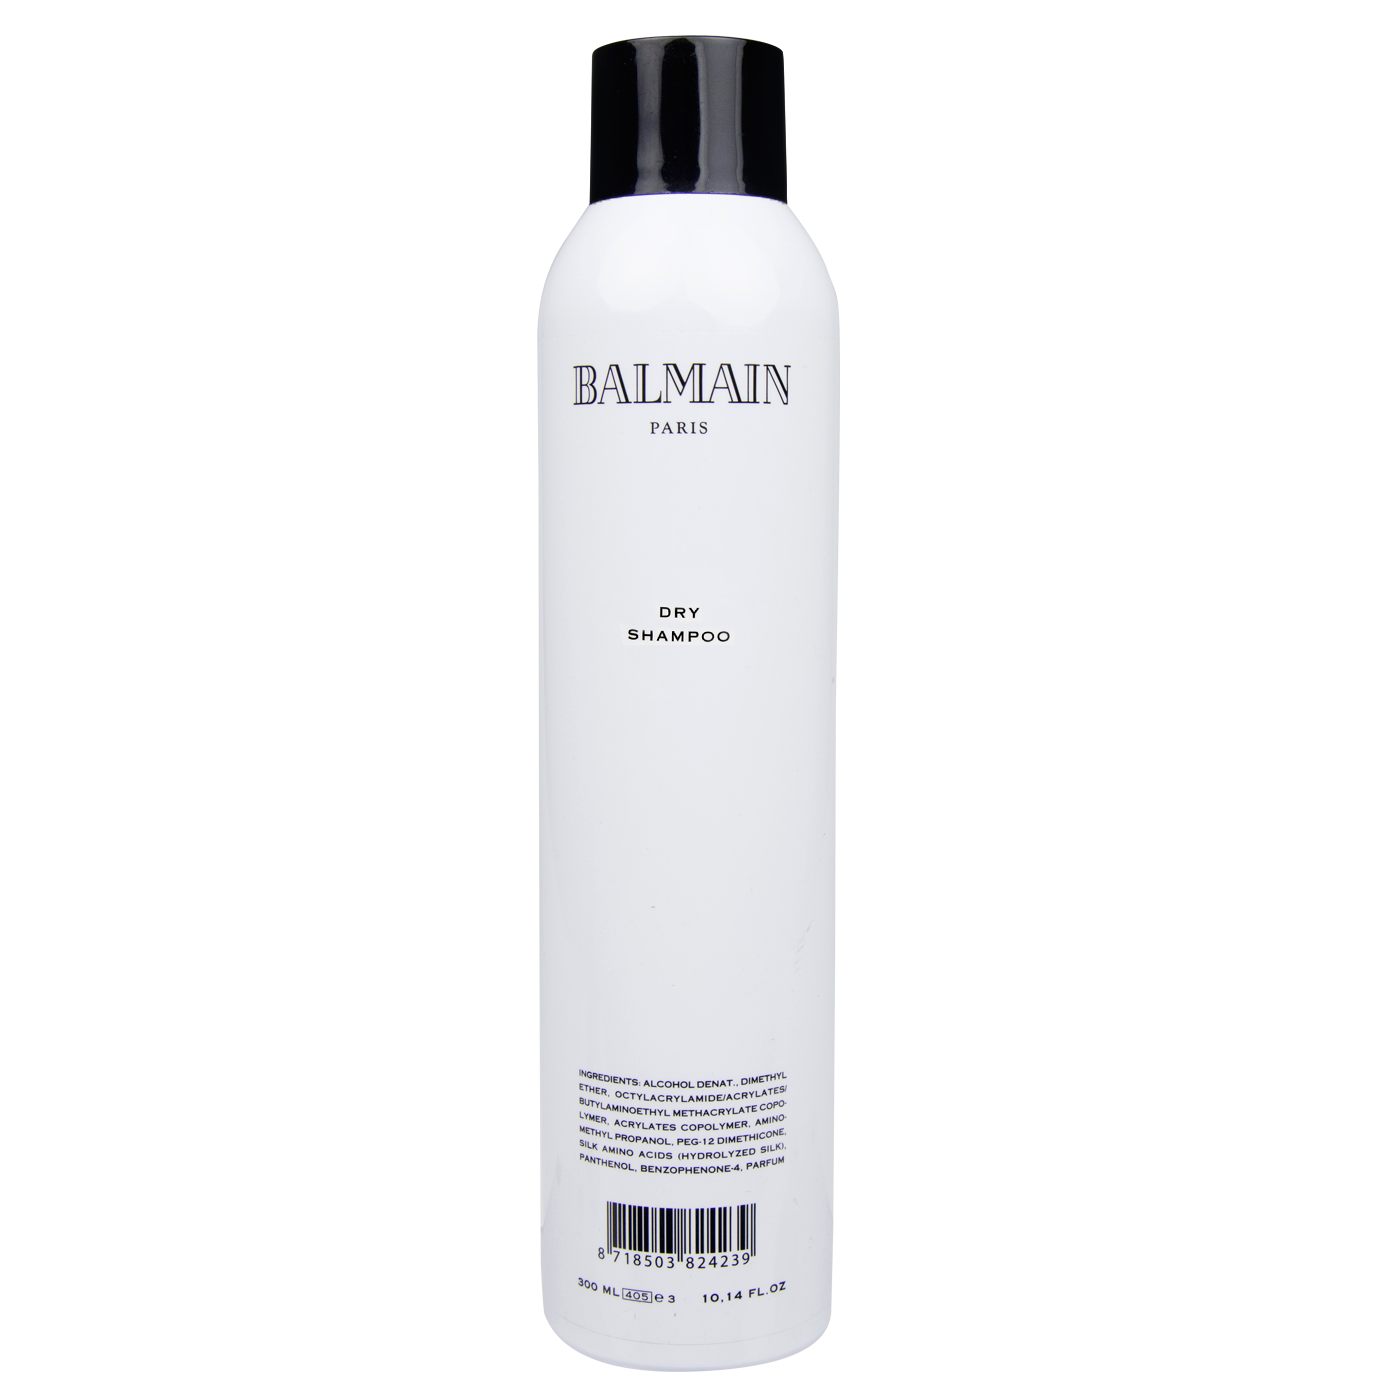 Balmain Dry Shampoo 300 ml | Shampoo en Seco